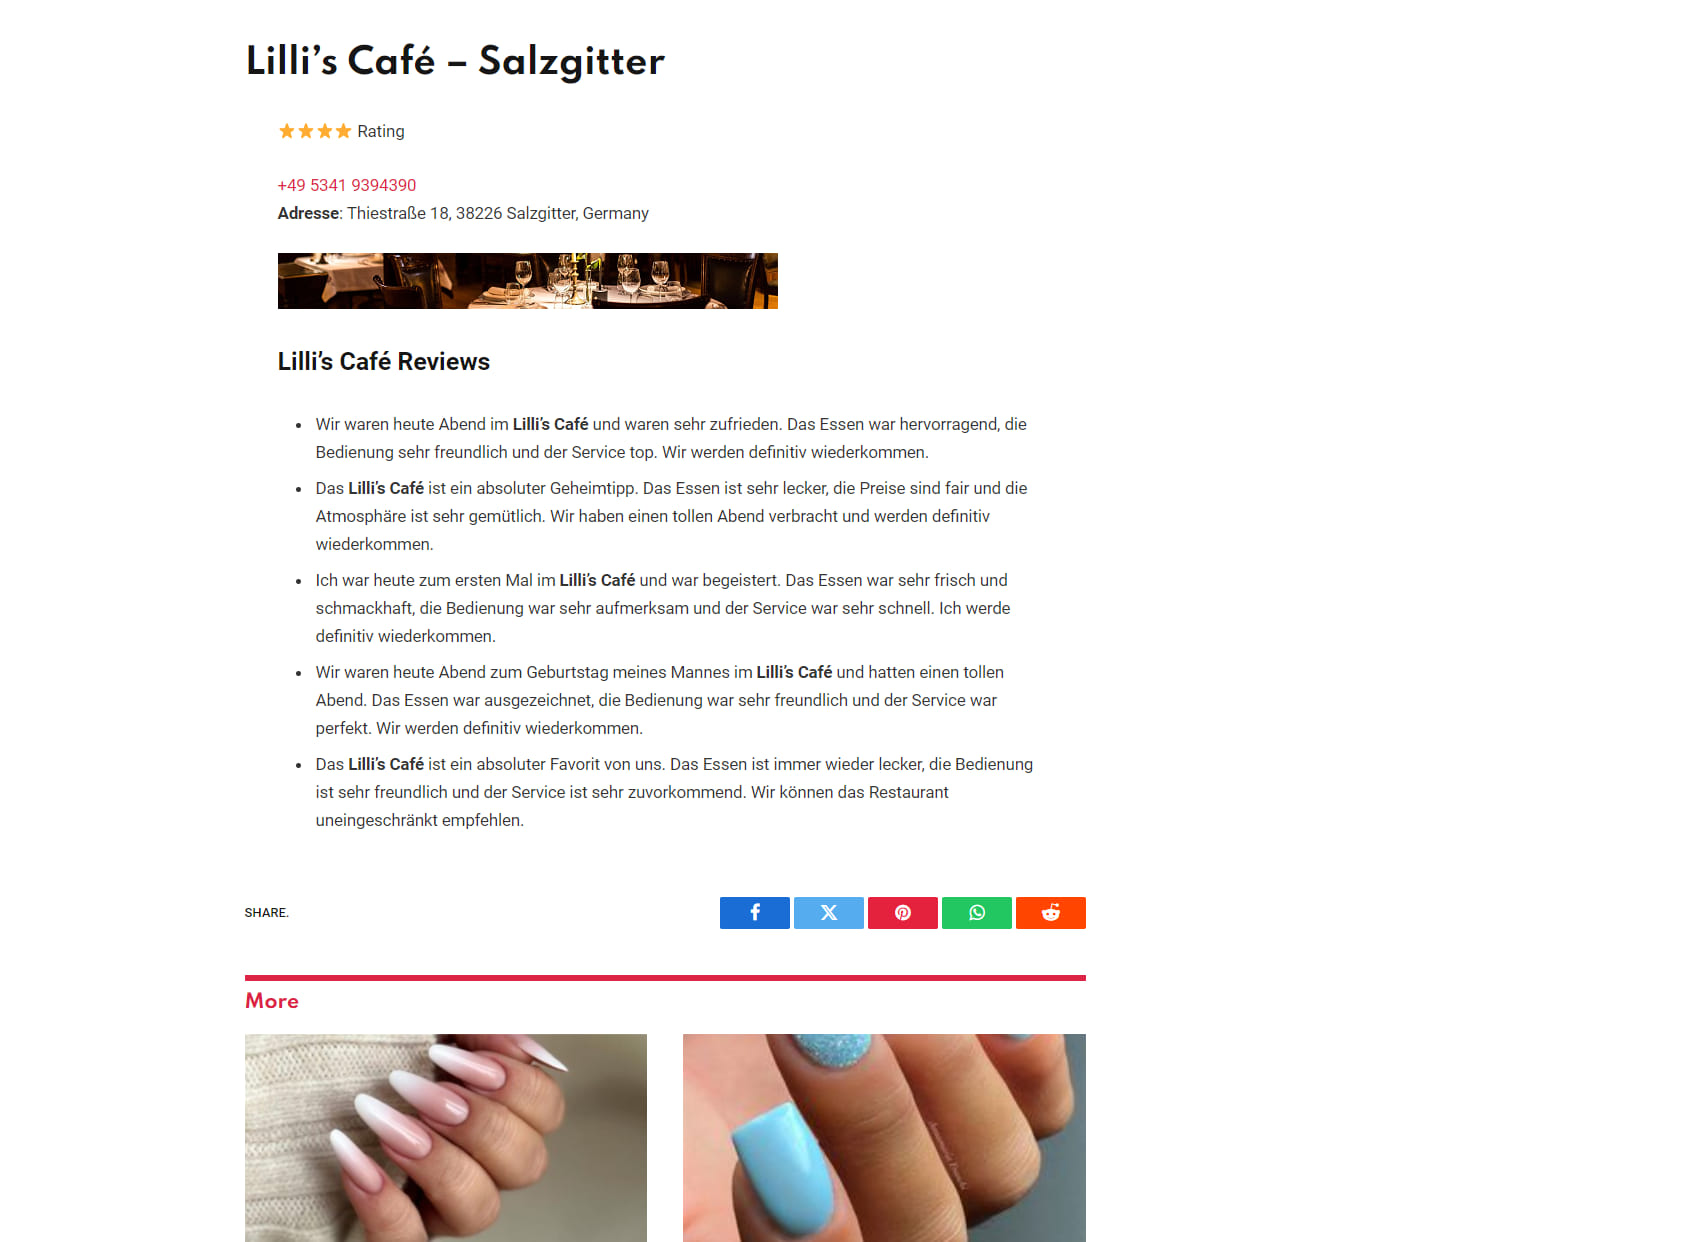 Lilli’s Café - Salzgitter